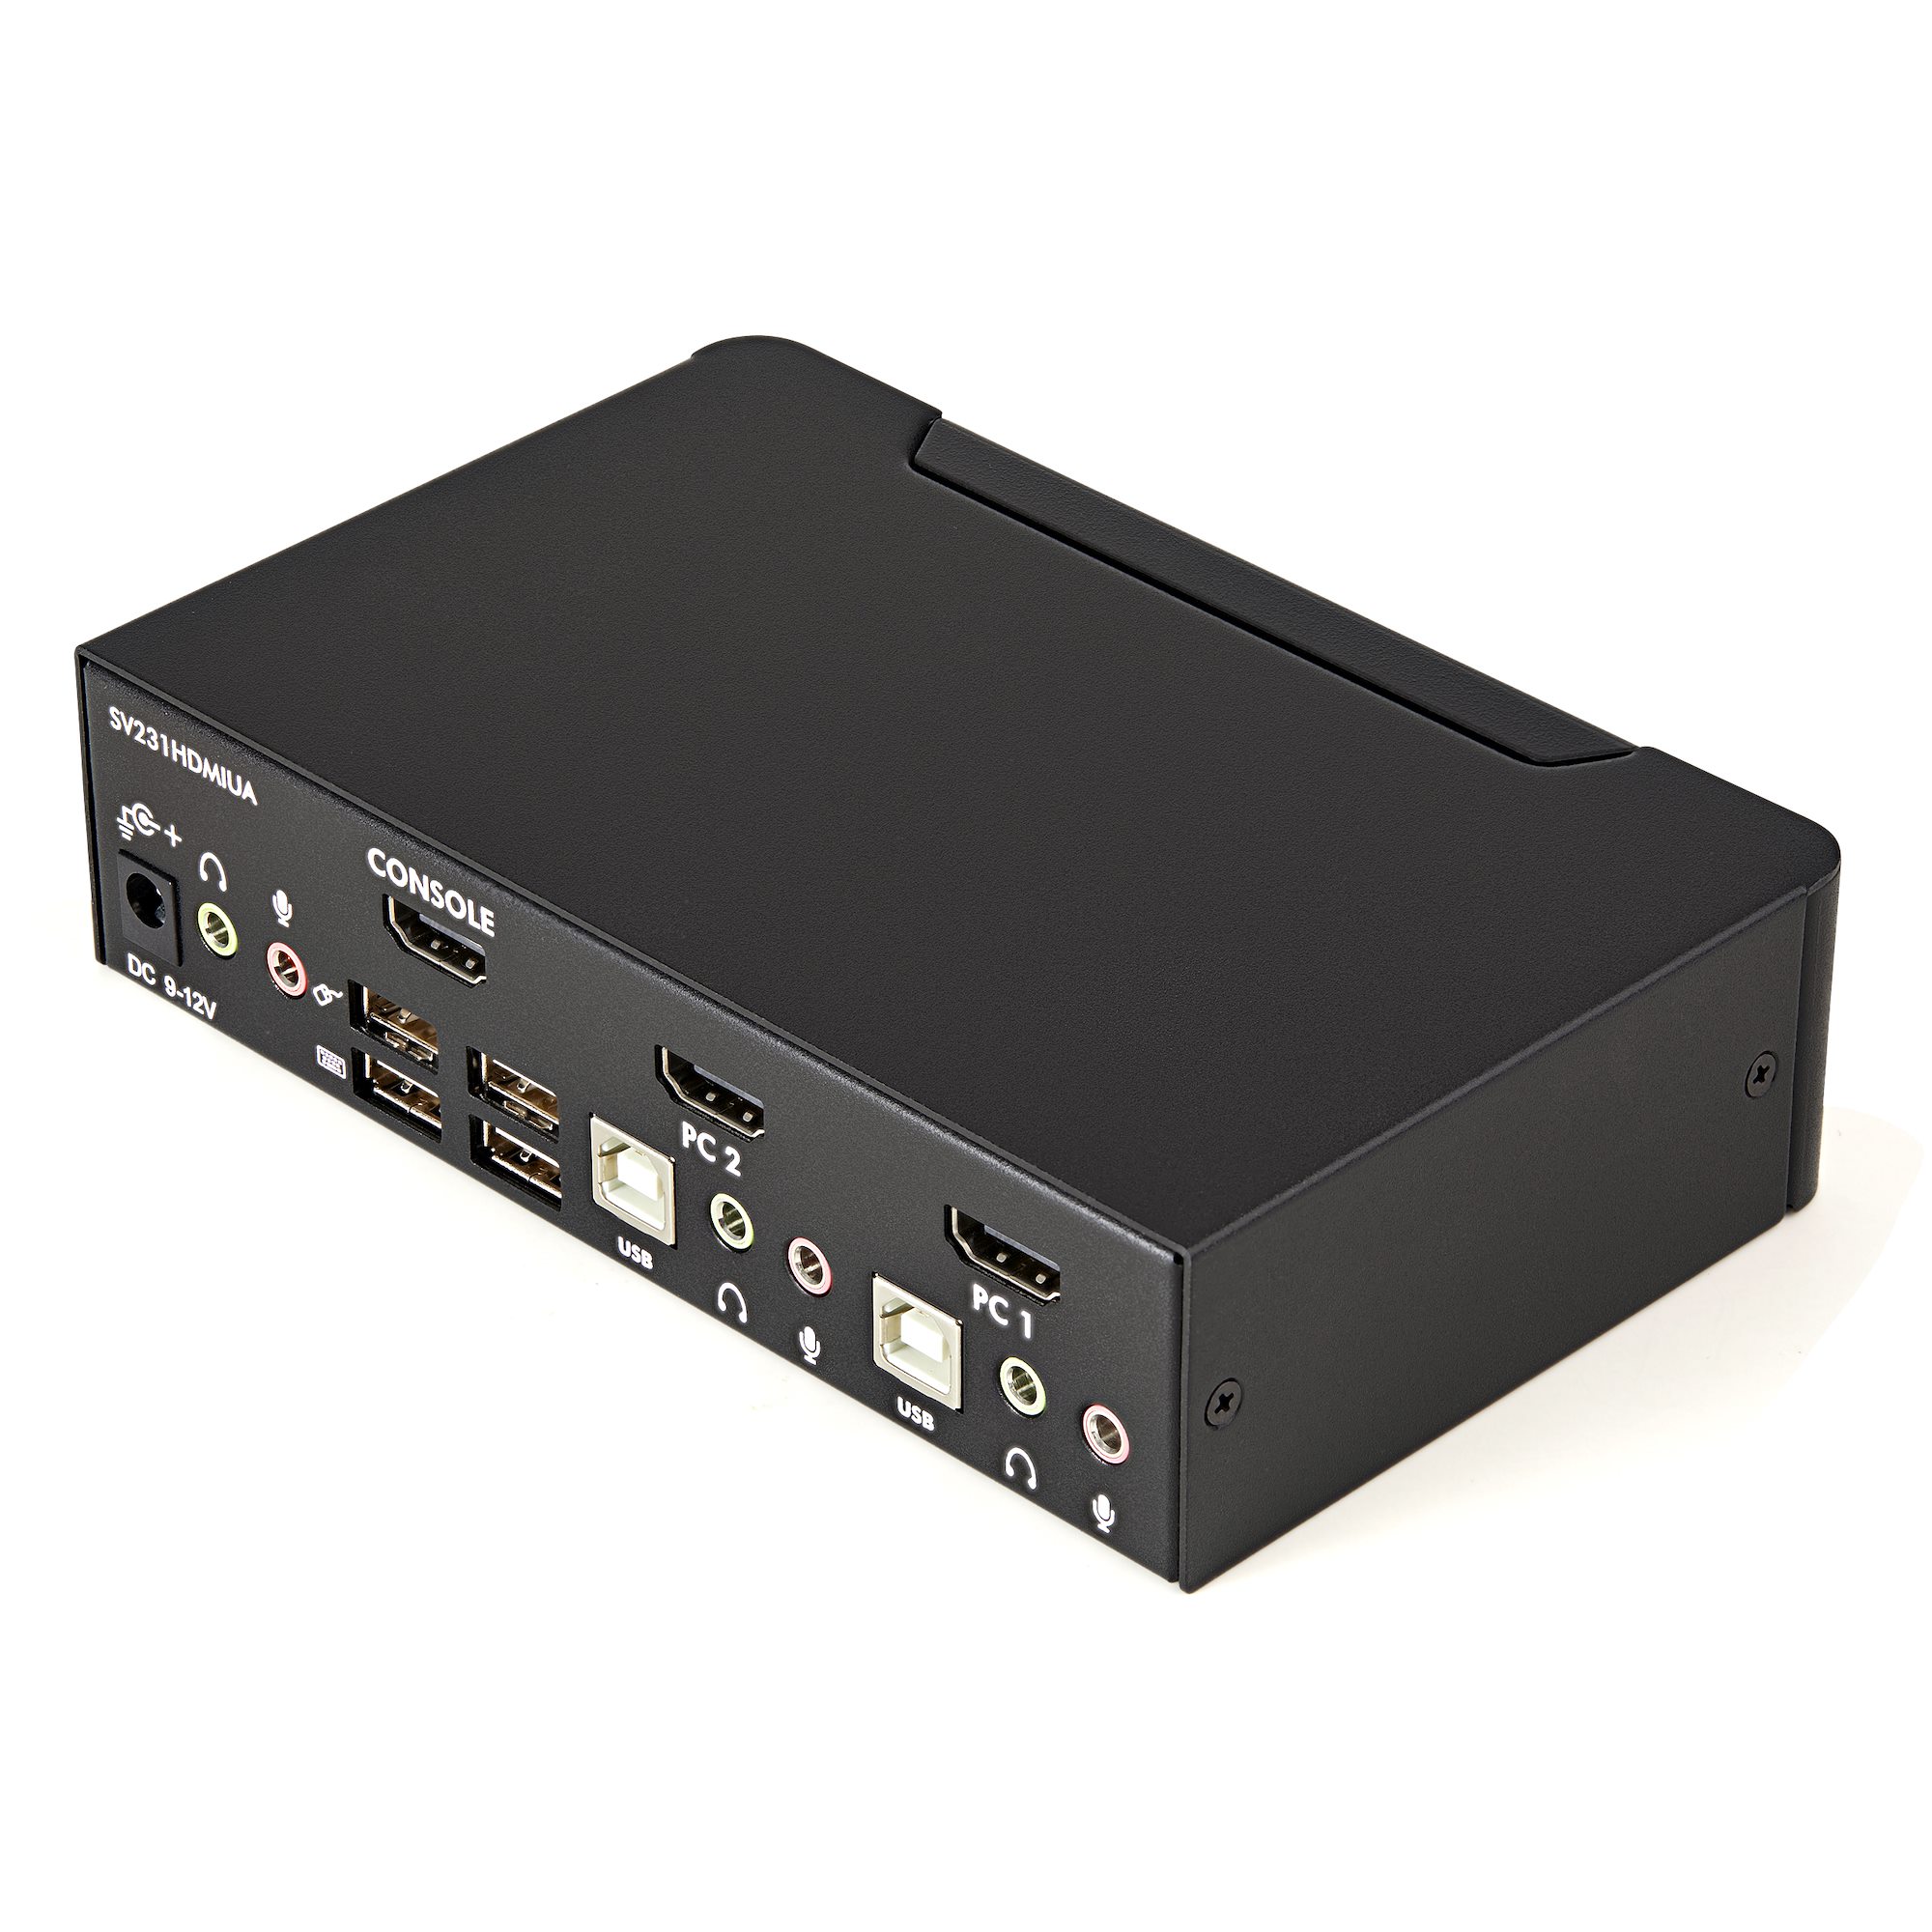 Product  StarTech.com 4 Port HDMI KVM - HDMI KVM Switch - 1080p